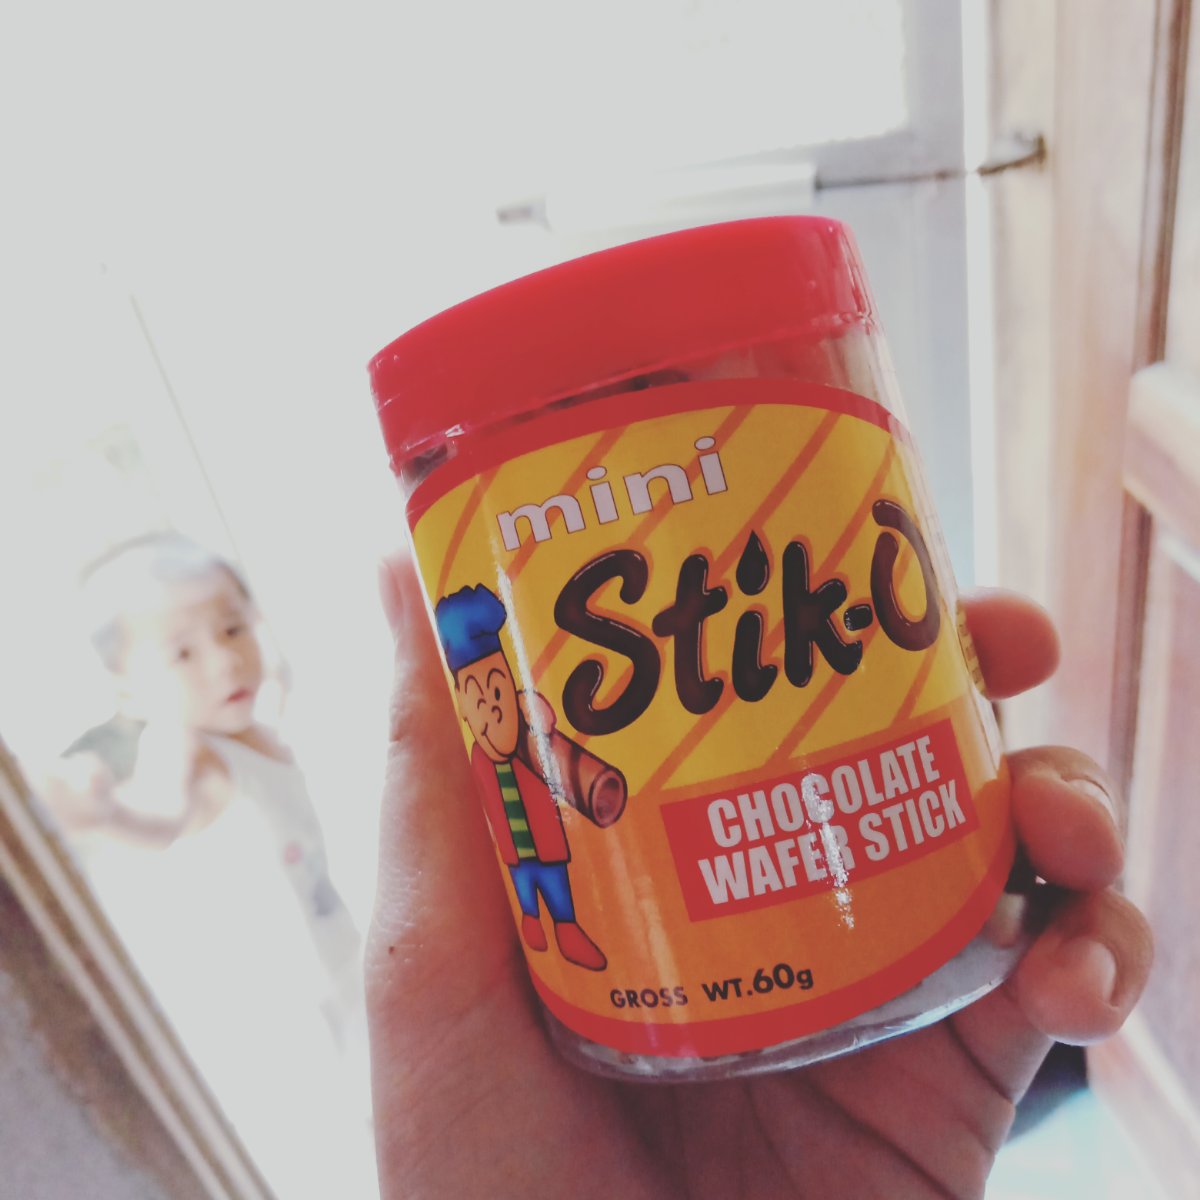 Get your stik-o